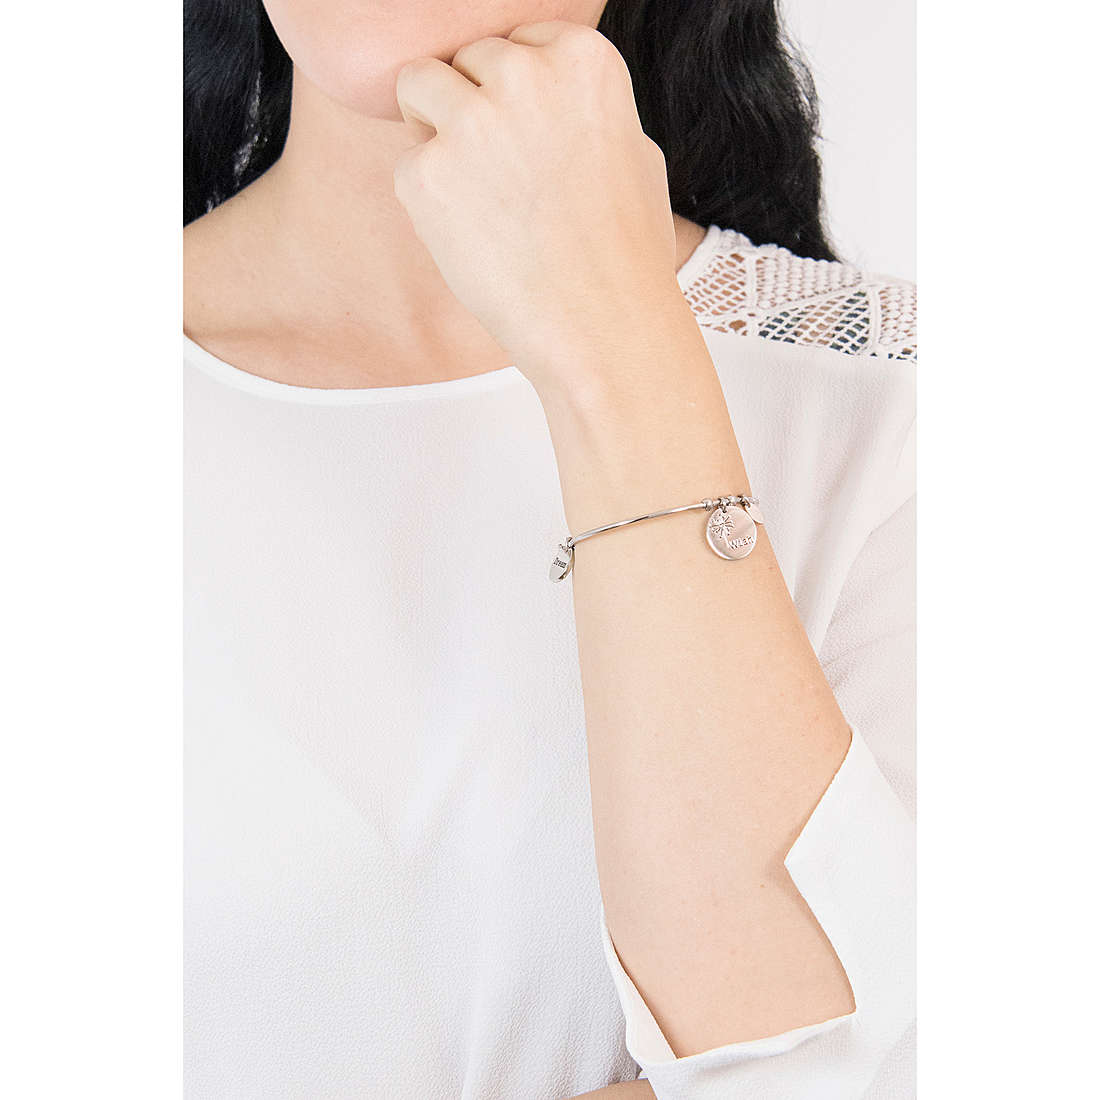 Lotus Style bracelets Millennial woman LS2017-2/3 wearing